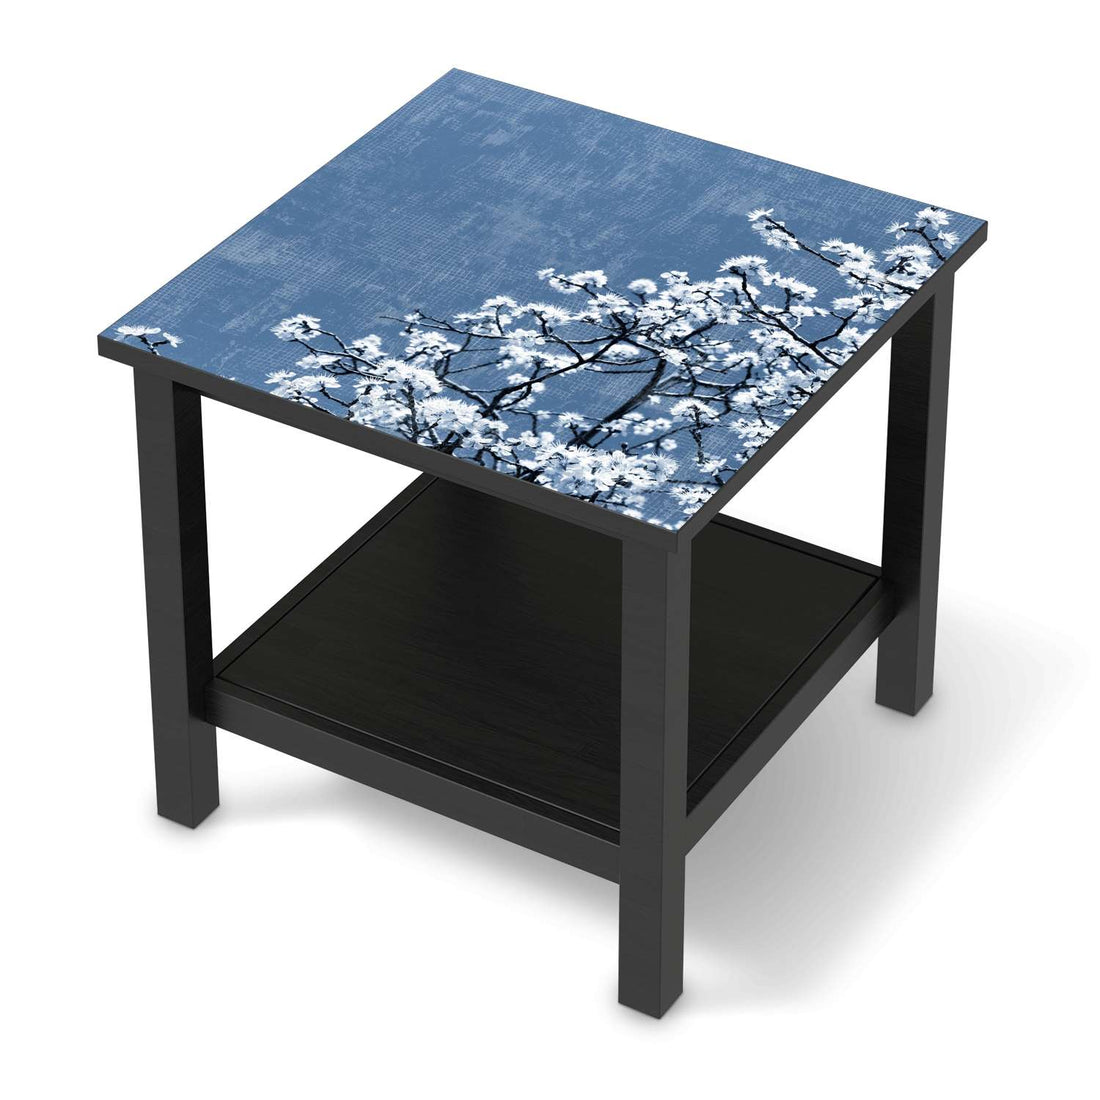 Möbel Klebefolie Spring Tree - IKEA Hemnes Beistelltisch 55x55 cm - schwarz